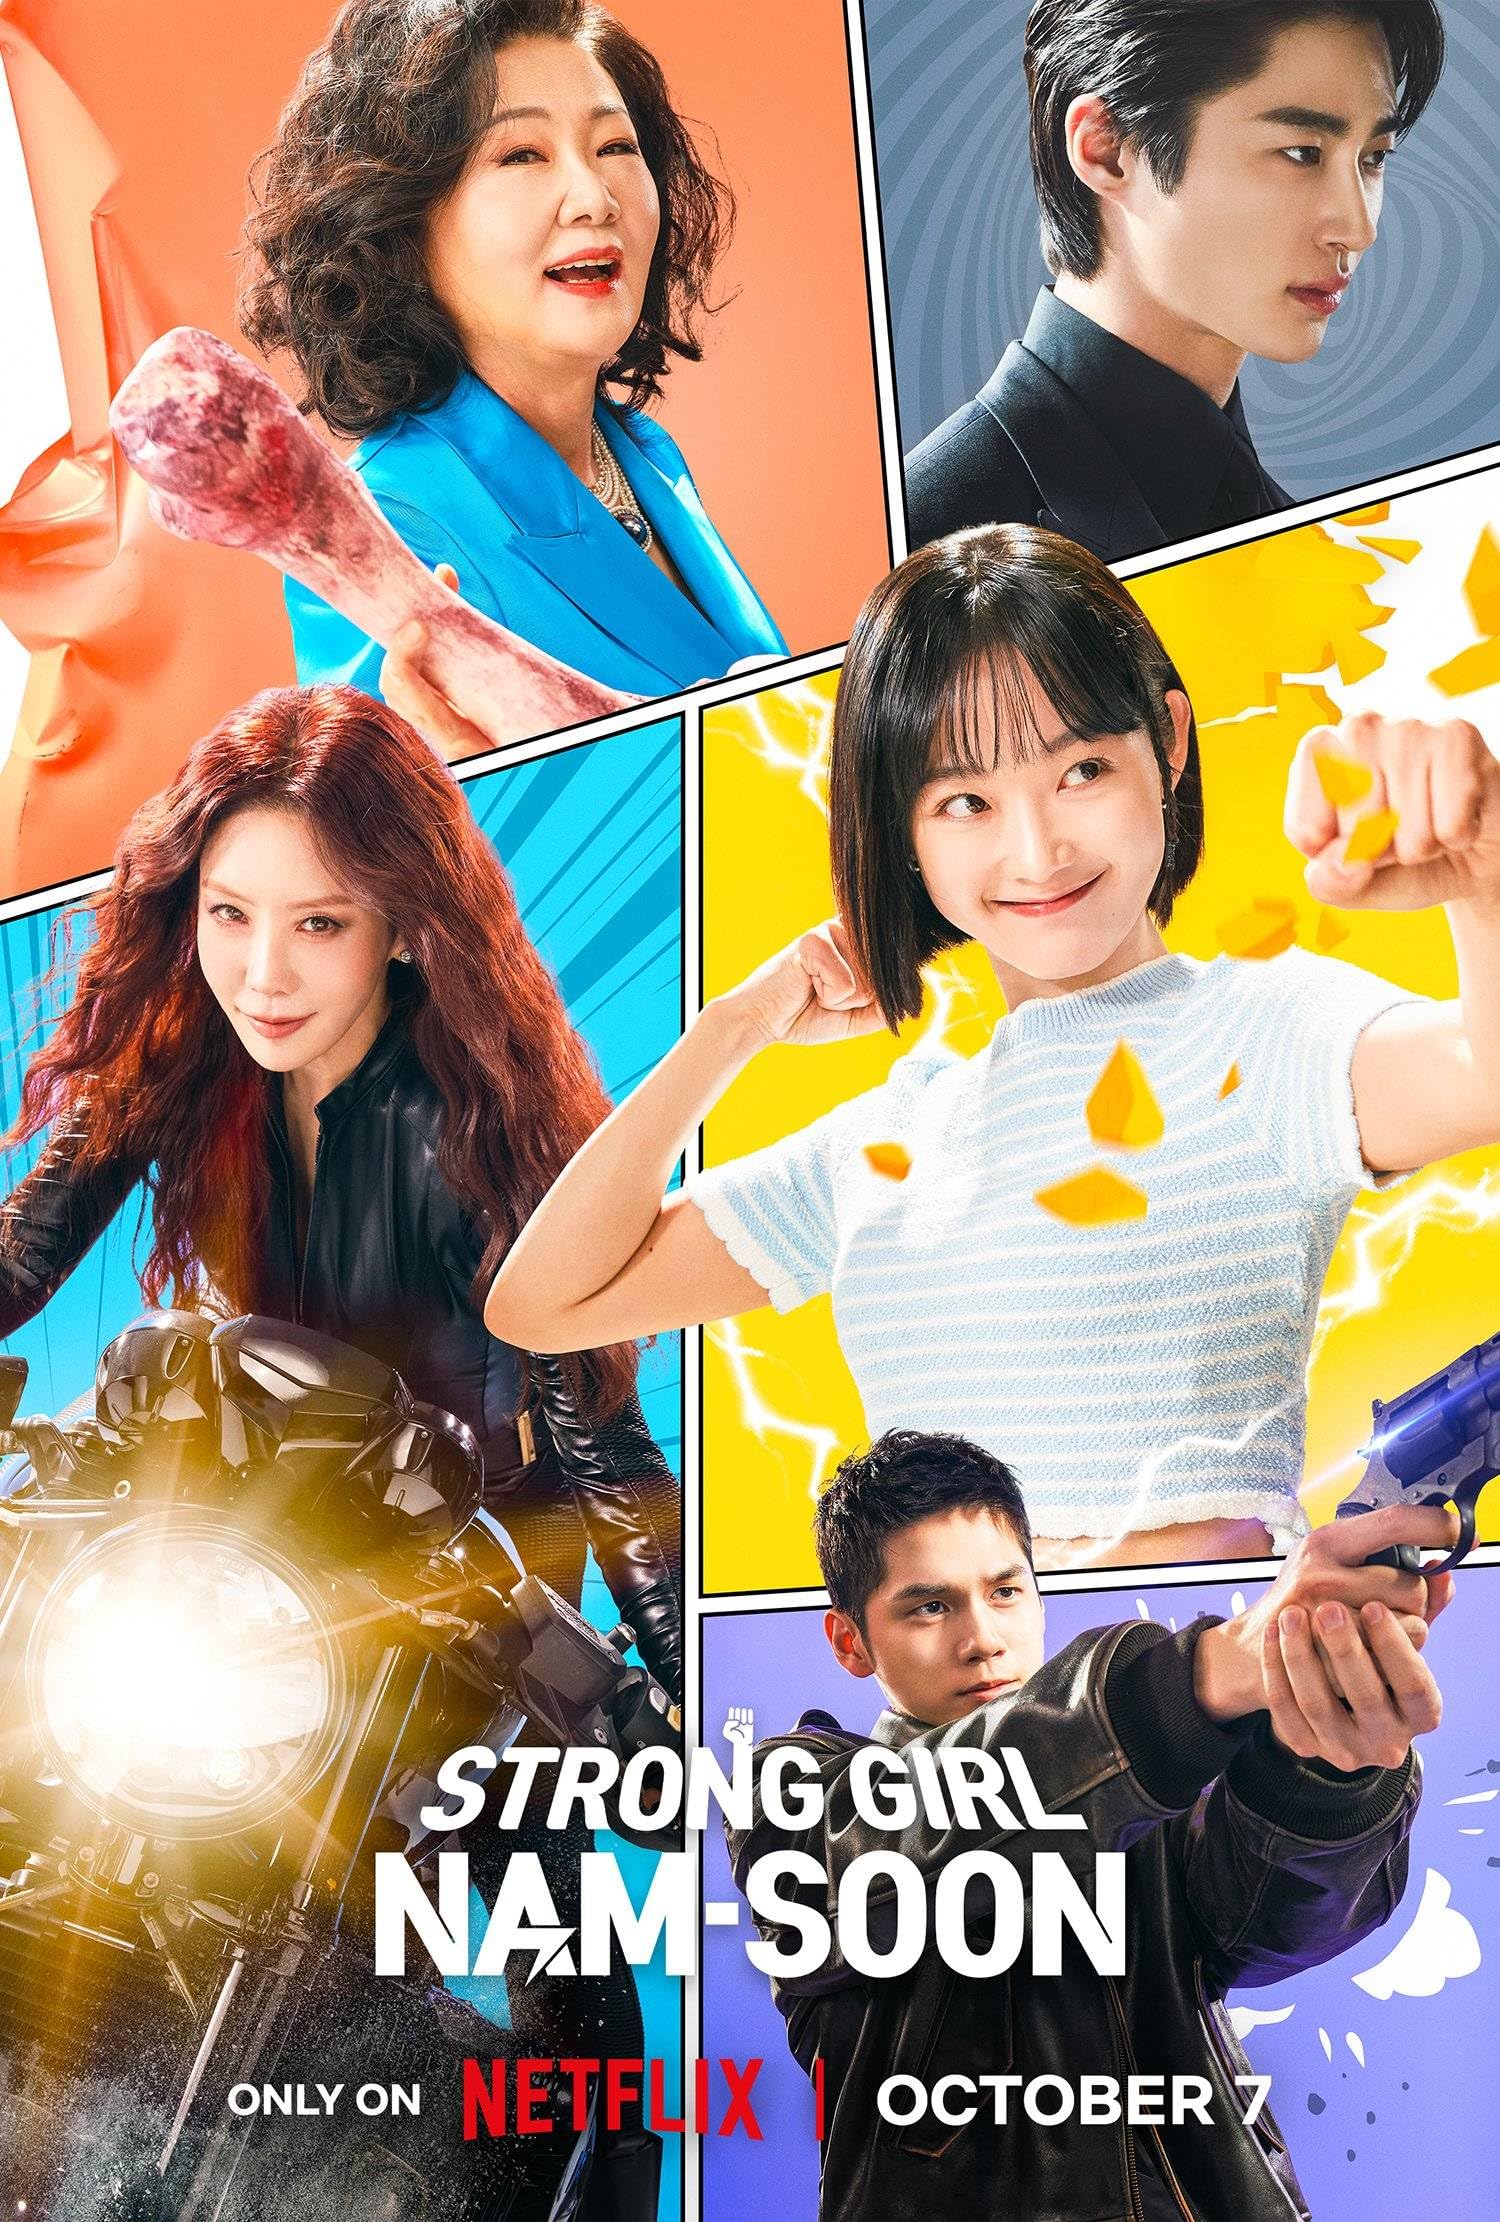 مسلسل الفتاة القوية نام سون Strong Girl Nam-soon الحلقة 6 مترجمة